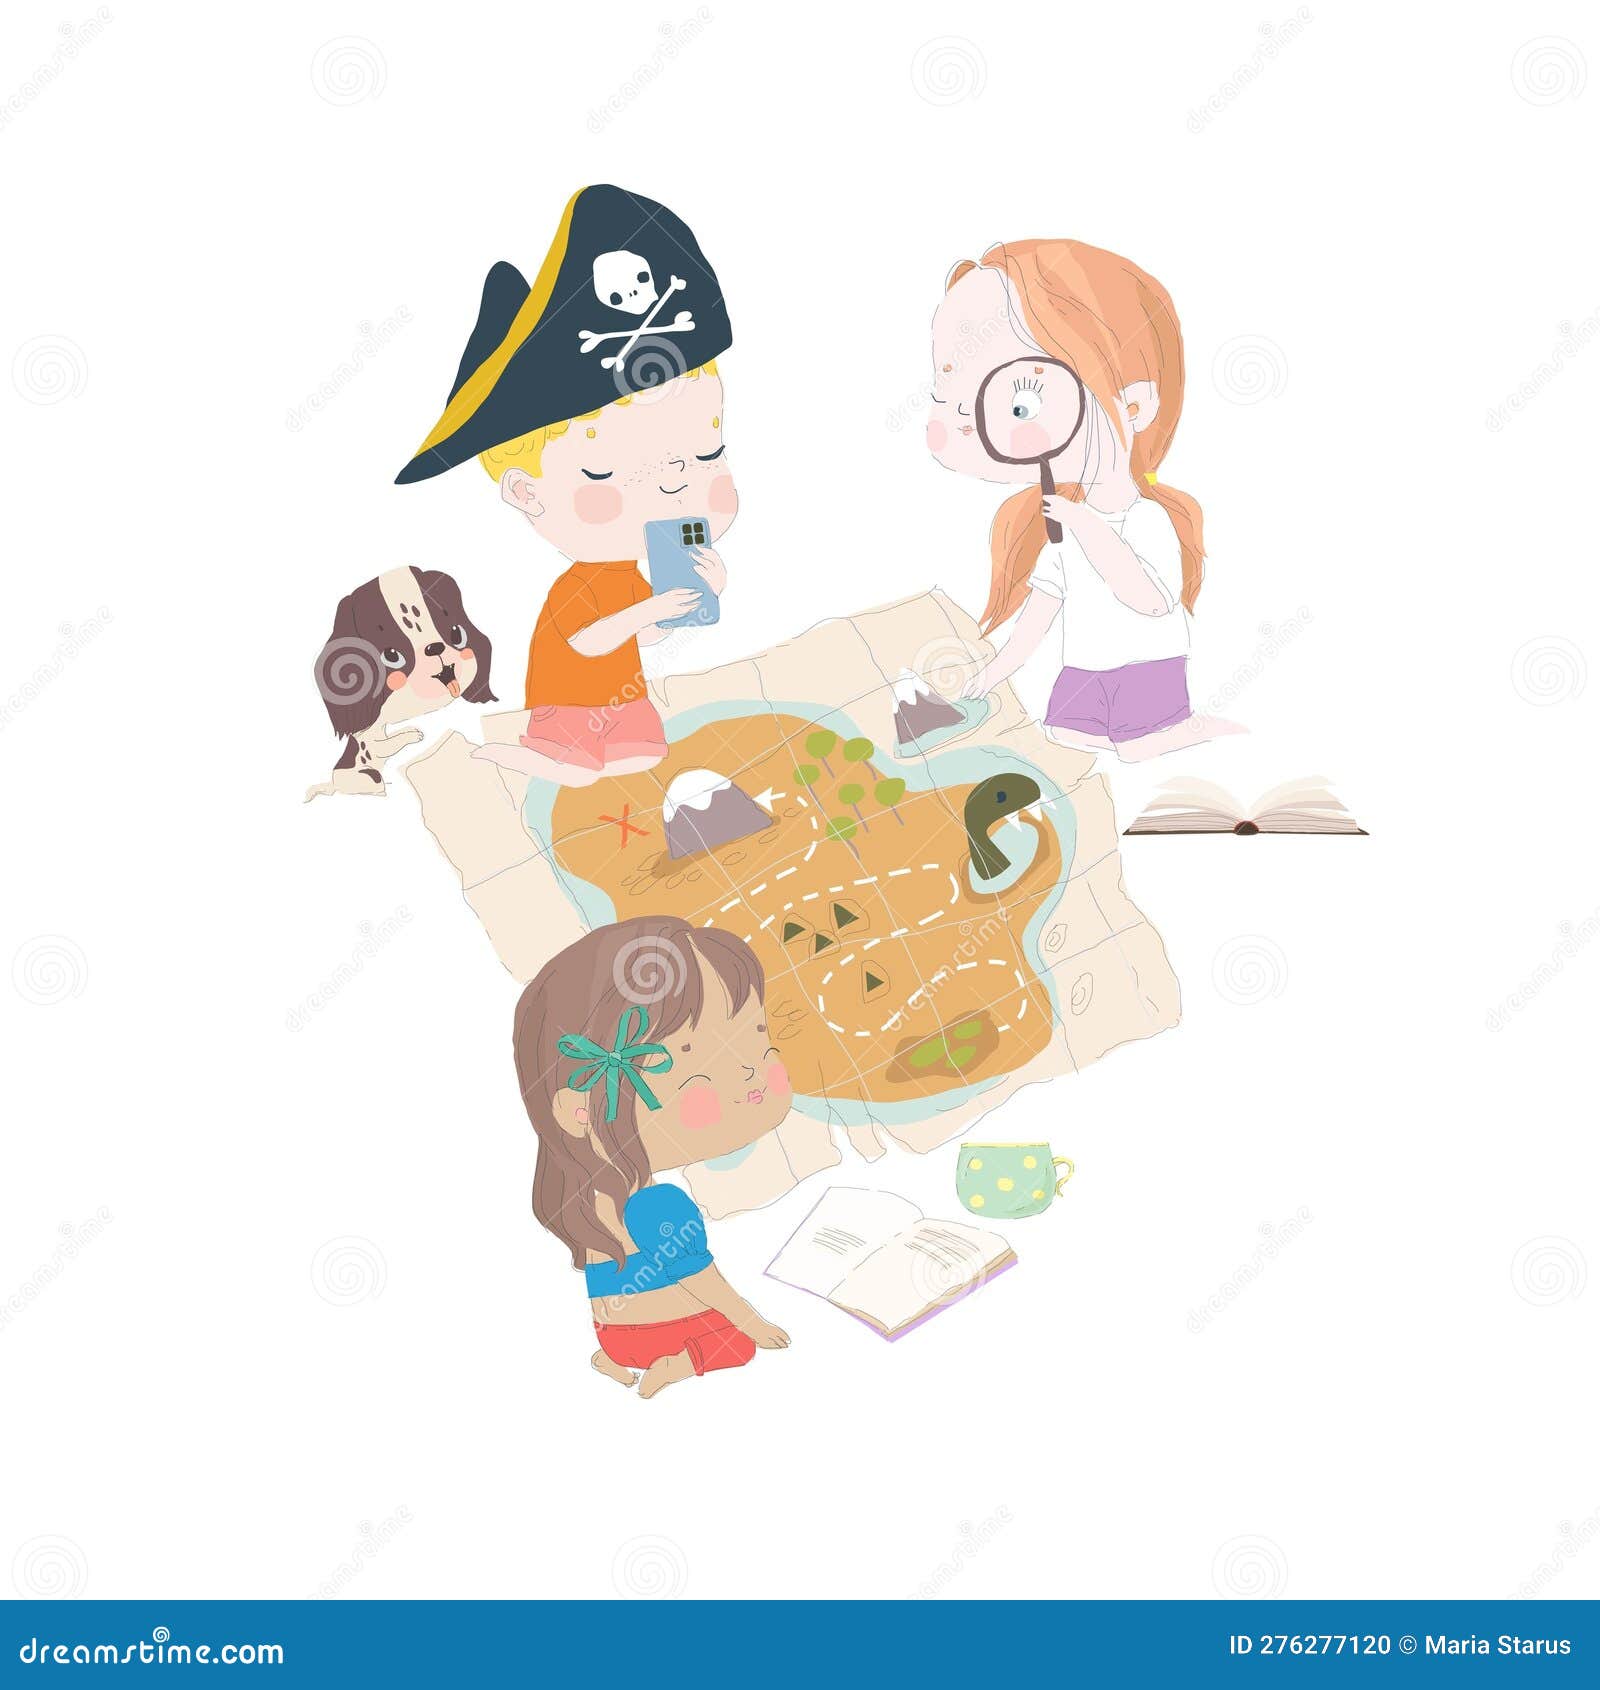 jogo de tabuleiro para crianças, personagens de frutas de desenho animado  17127675 Vetor no Vecteezy